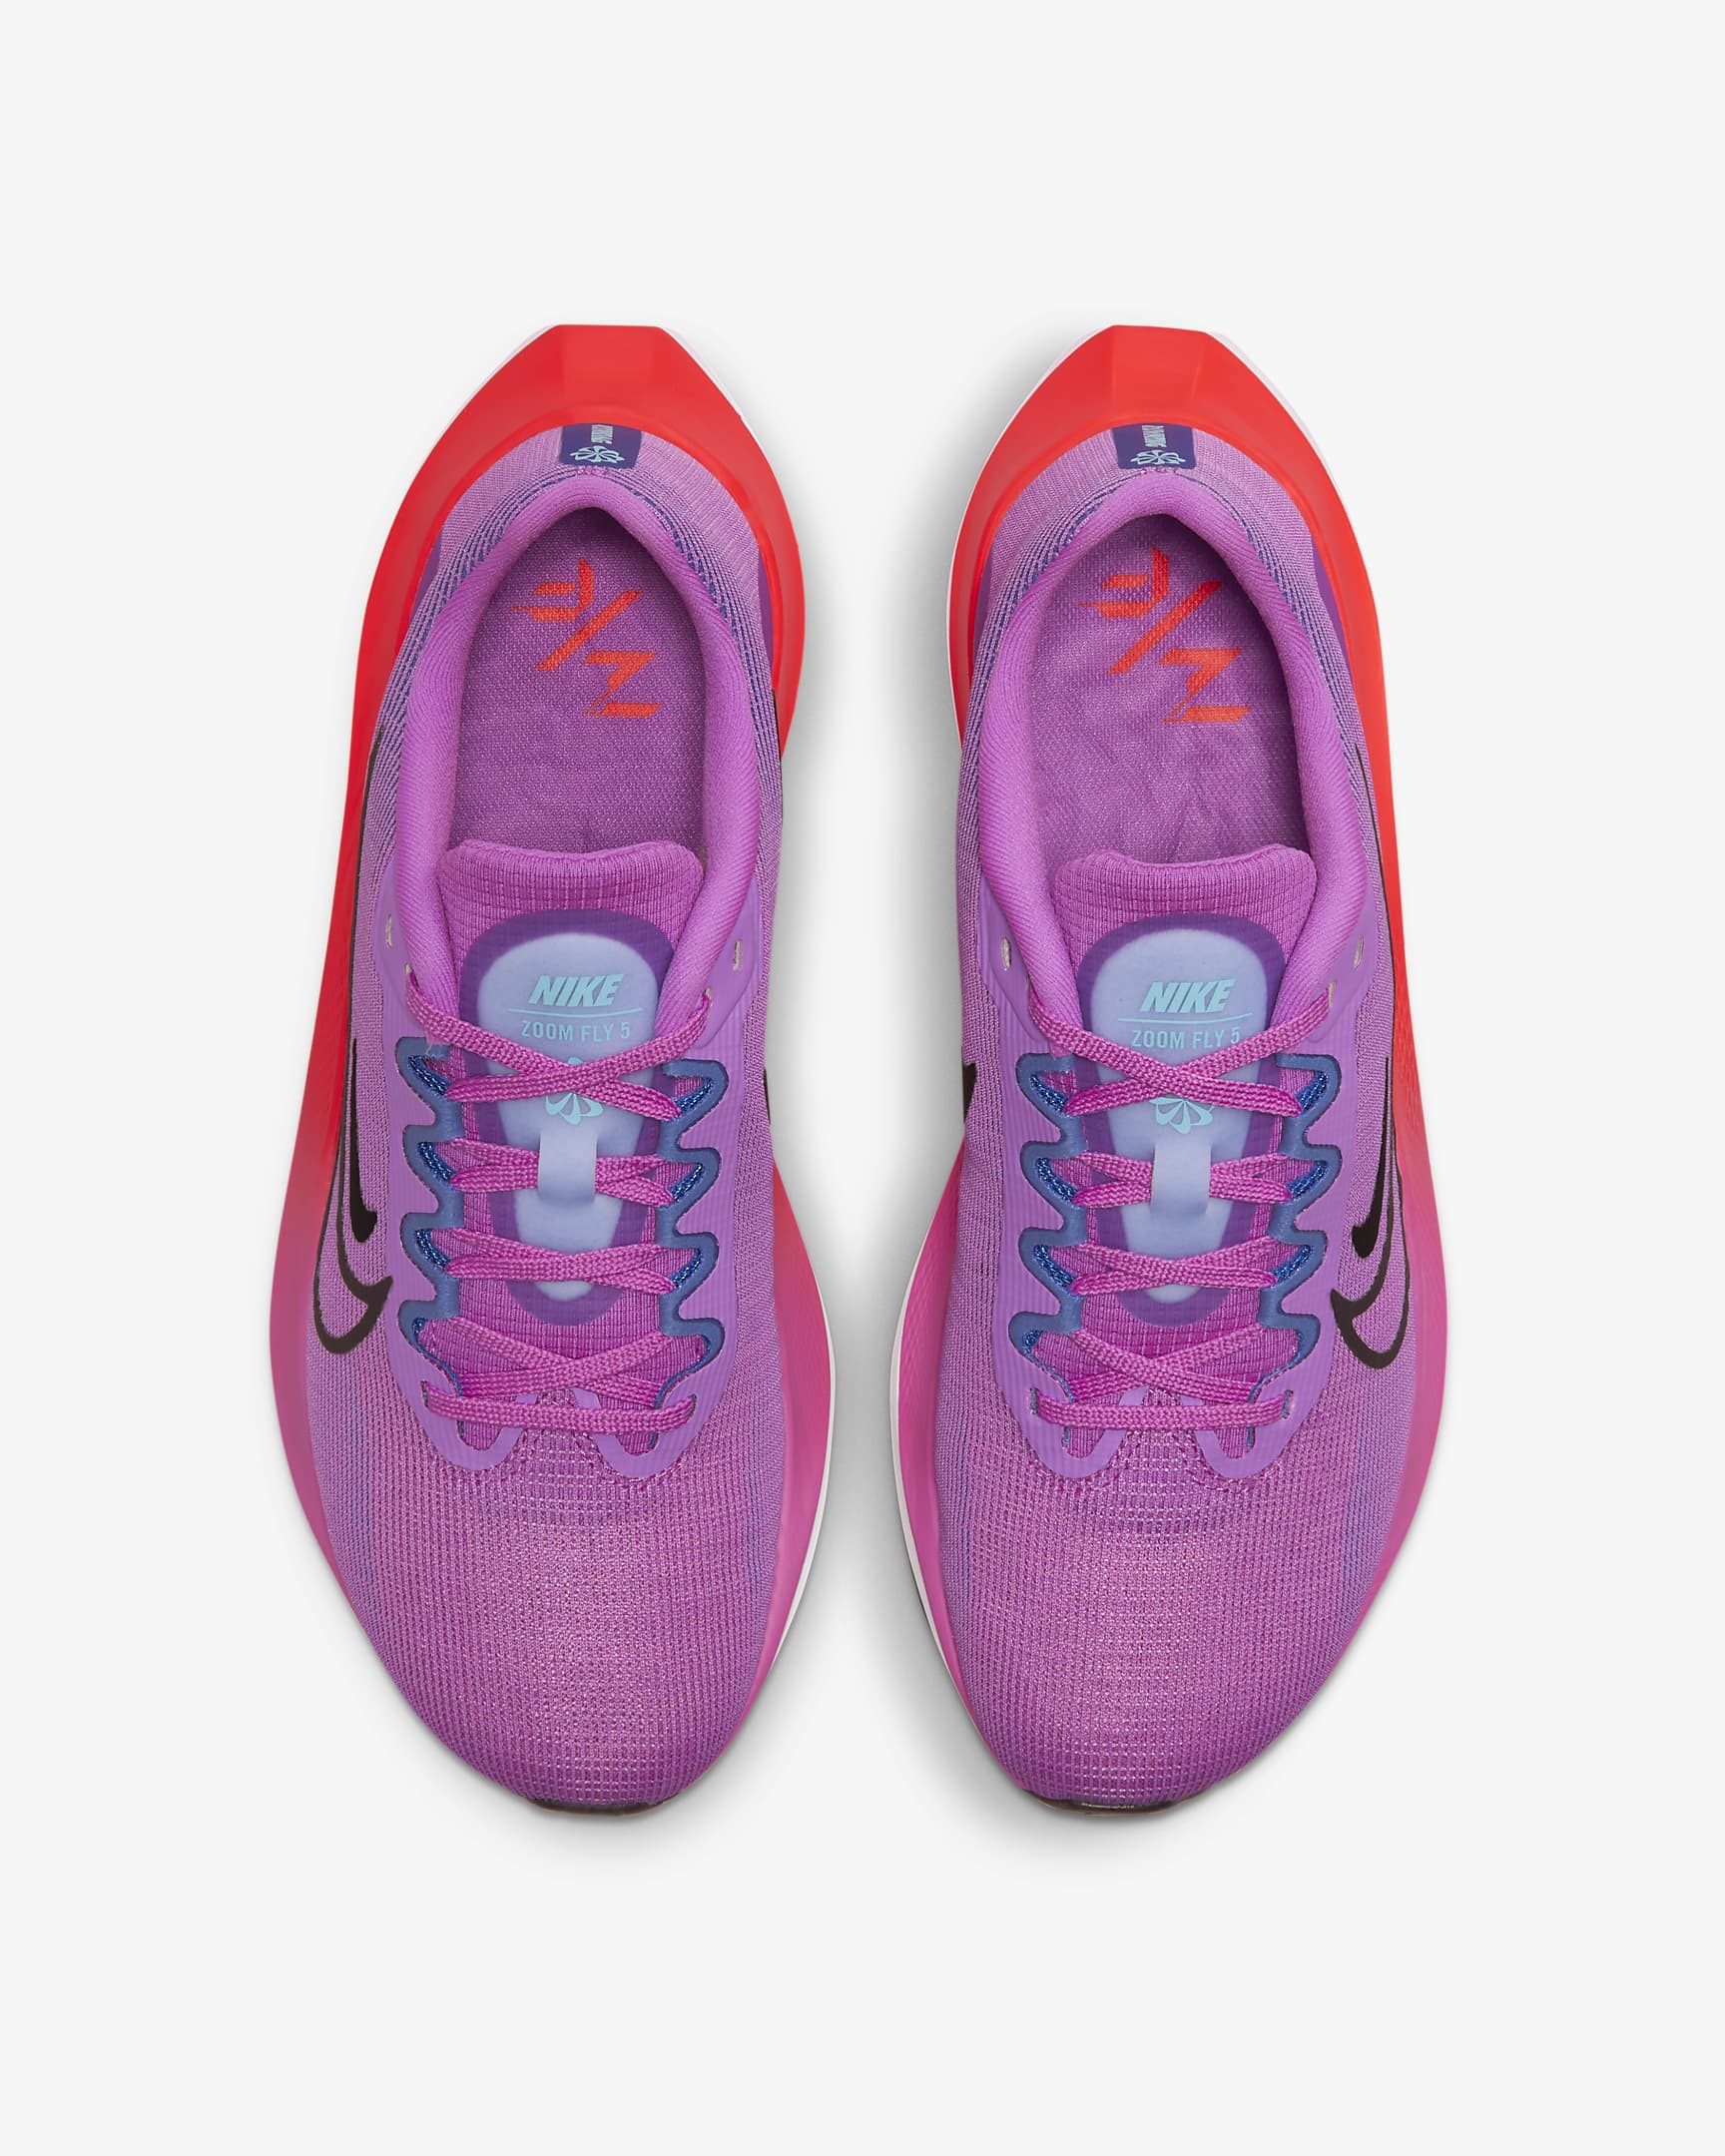 Suposiciones, suposiciones. Adivinar Innecesario Con rapidez Nike Zoom Fly 5 Women's Road Running Shoes. Nike.com